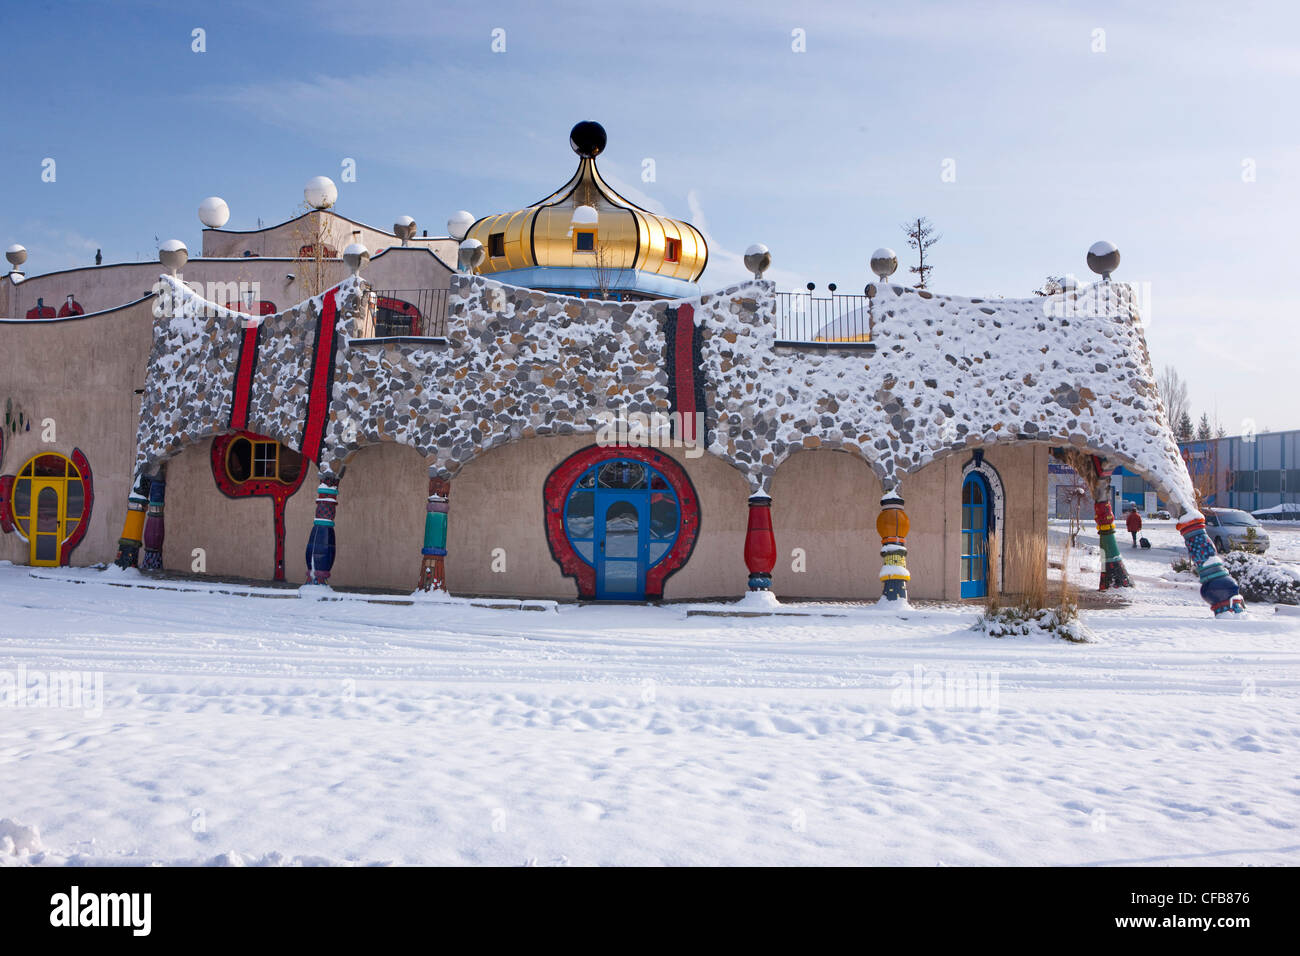 Inverno, la neve, del cantone di San Gallo, San Gallo, Svizzera, Europa, la costruzione, la costruzione, la cultura, Hundertwasser, mercato coperto, Foto Stock